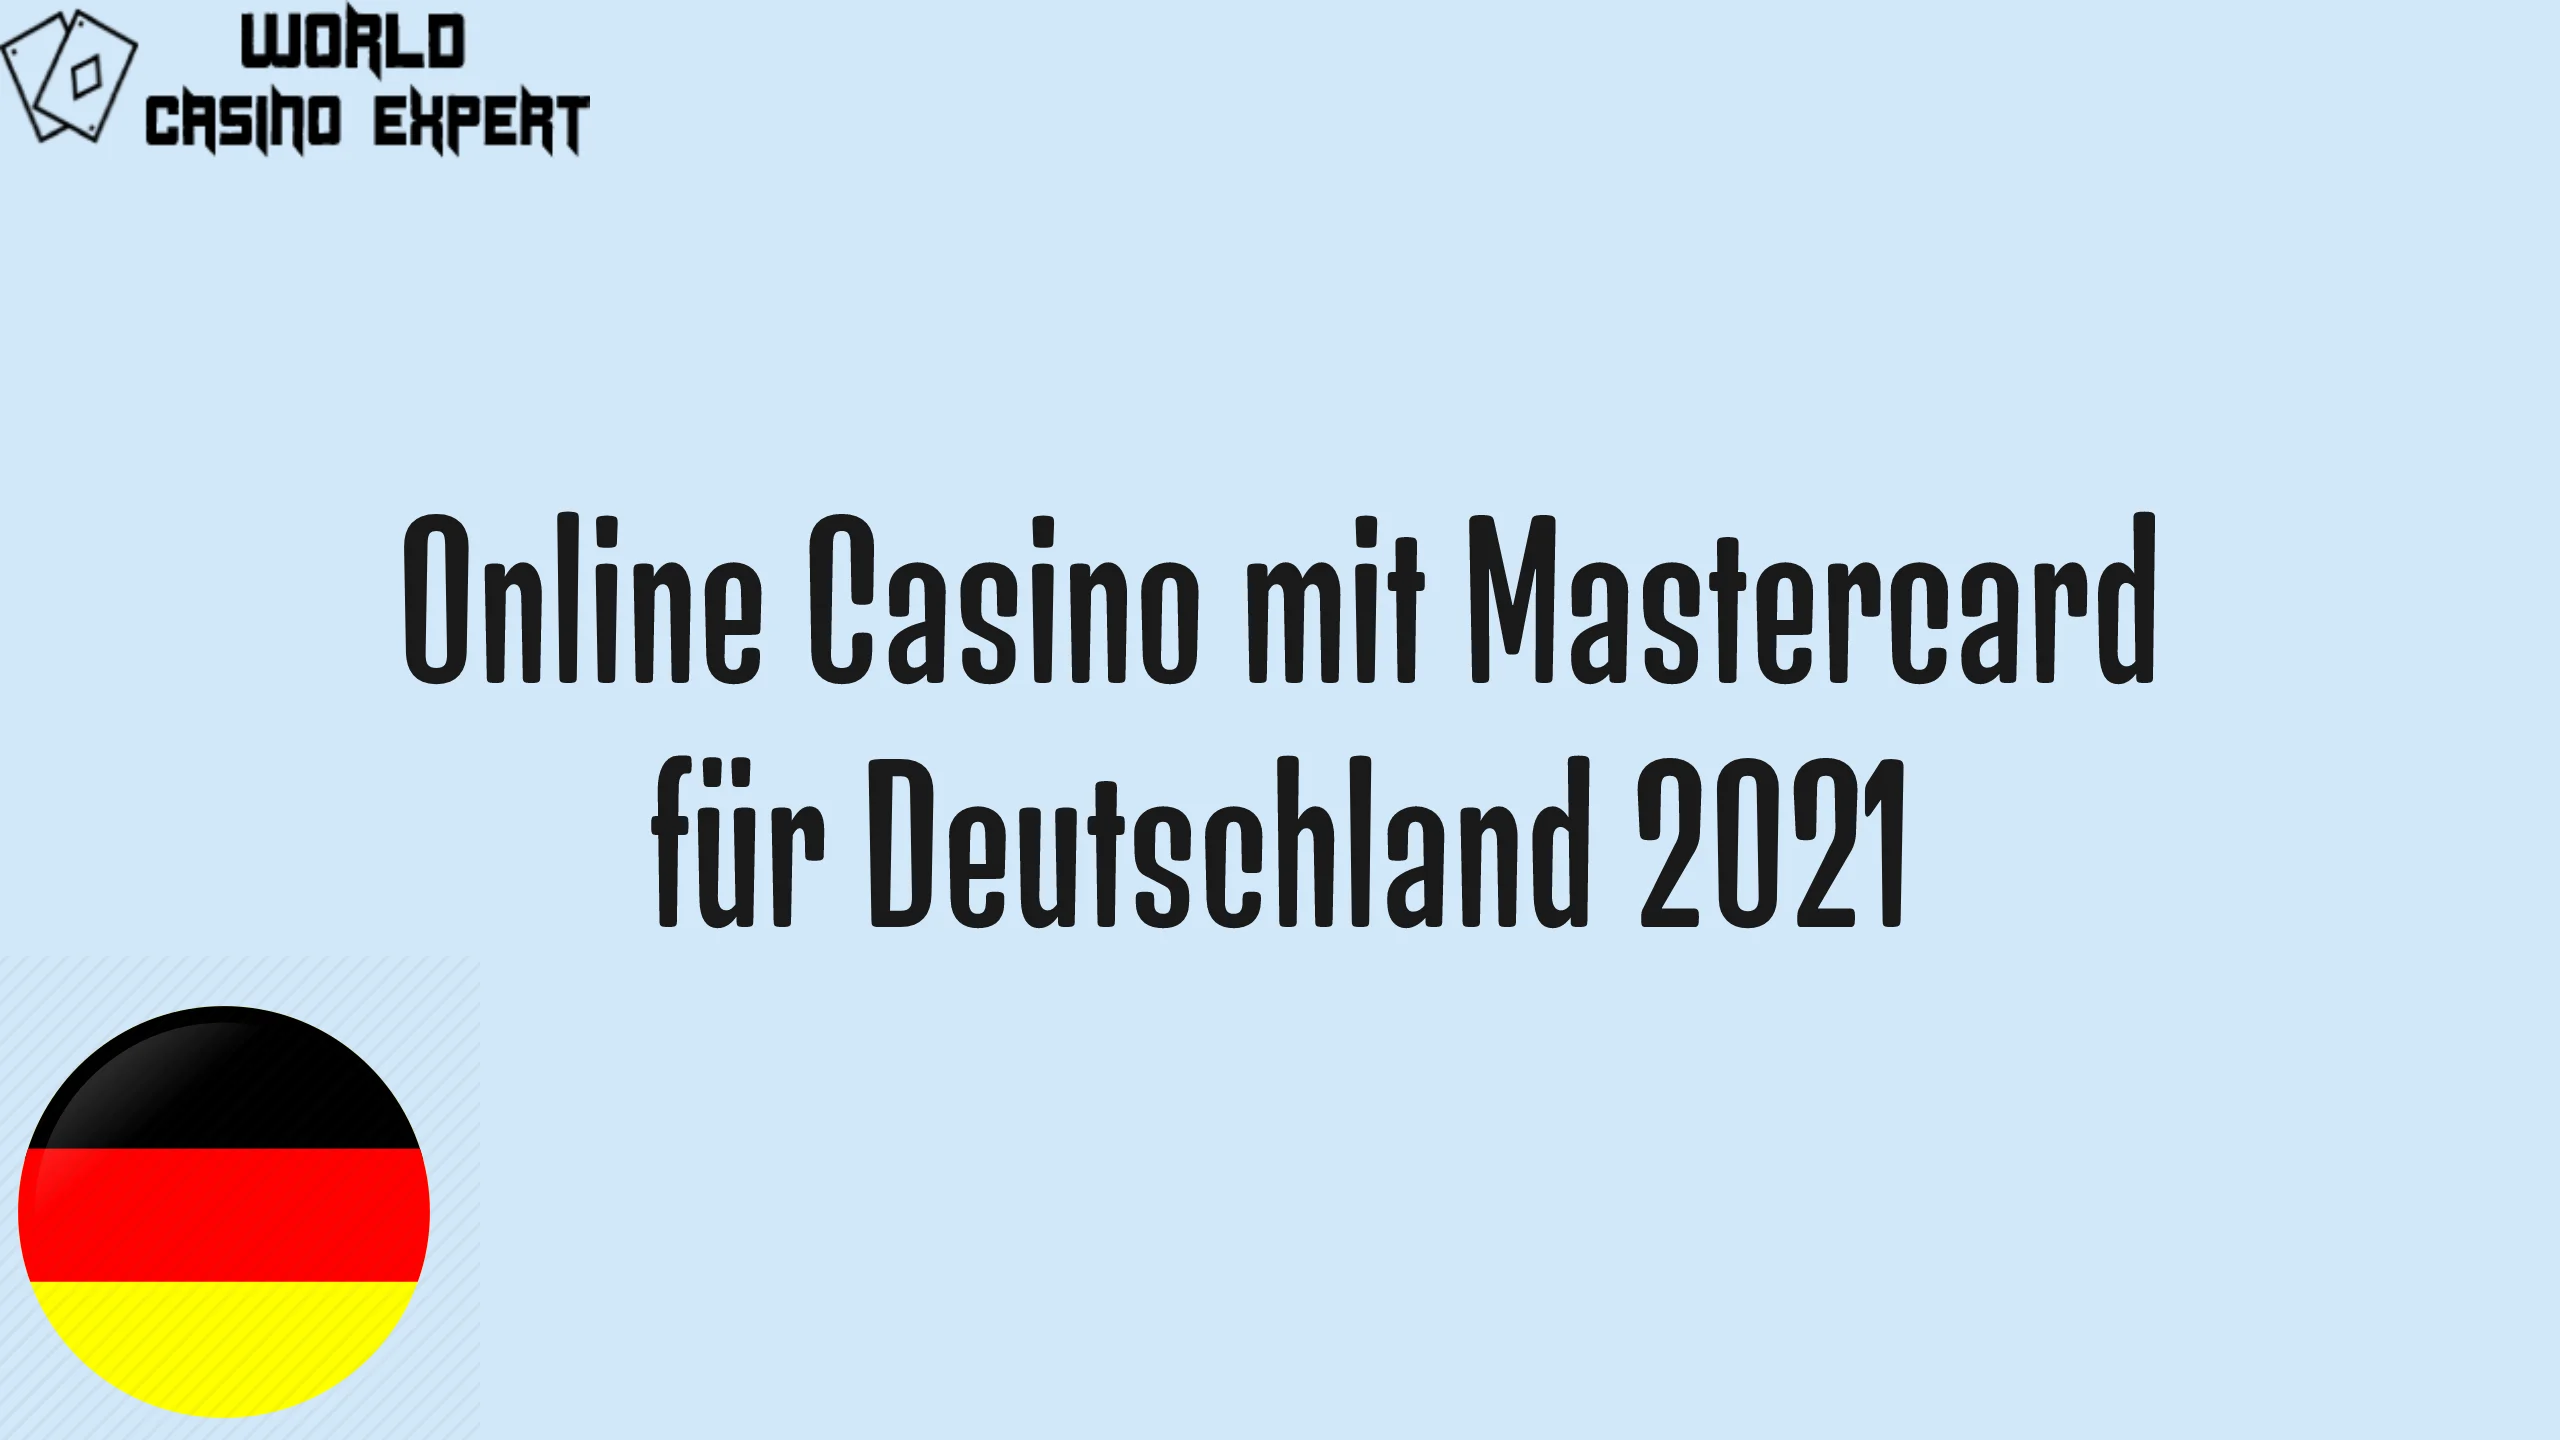 Online Casino mit Mastercard für Deutschland 2021 | World Casino Expert Deutschland 